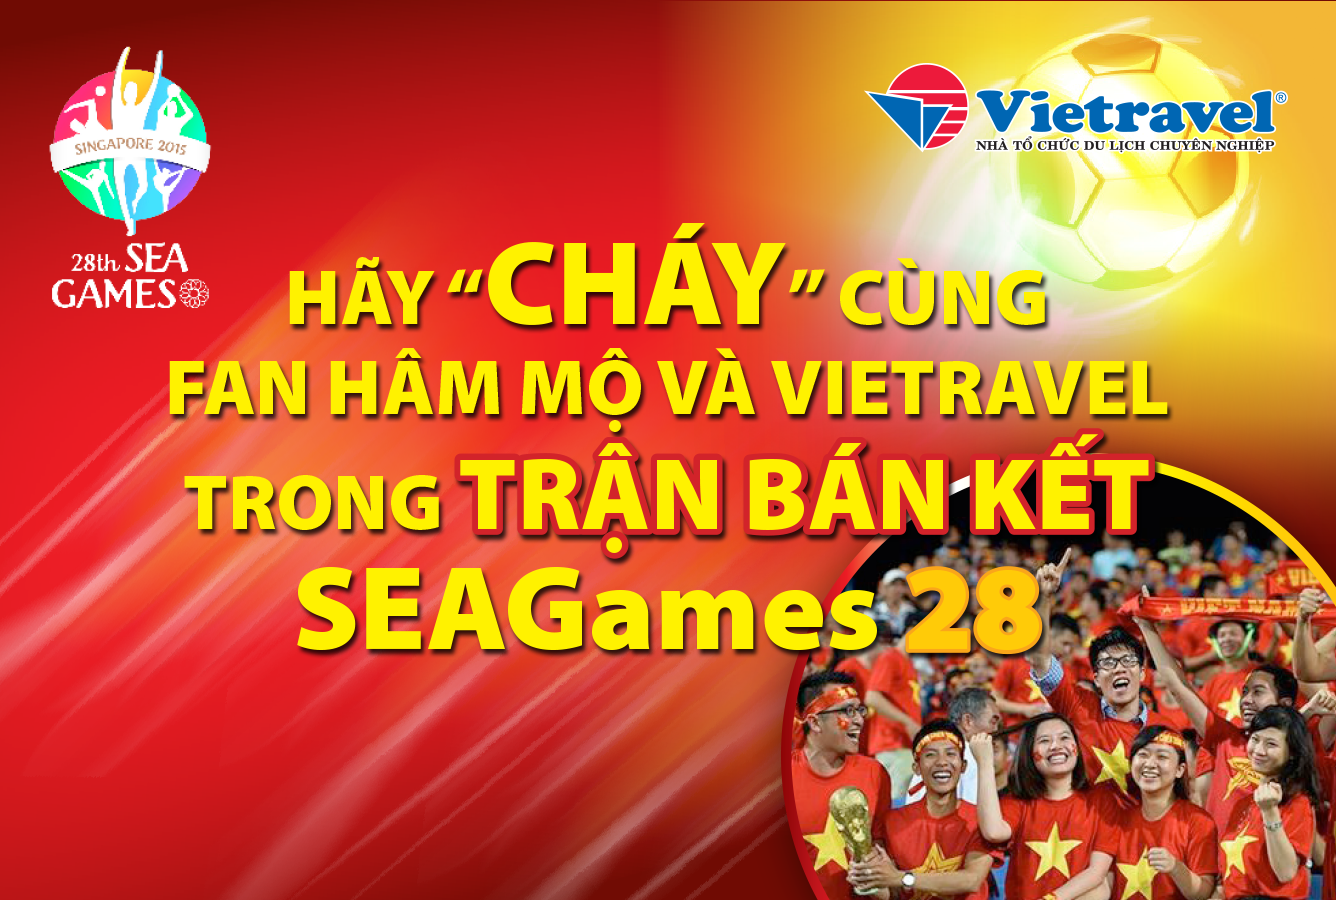 Tiếp lửa tuyển Việt Nam tại Sea Games 28 cùng Vietravel